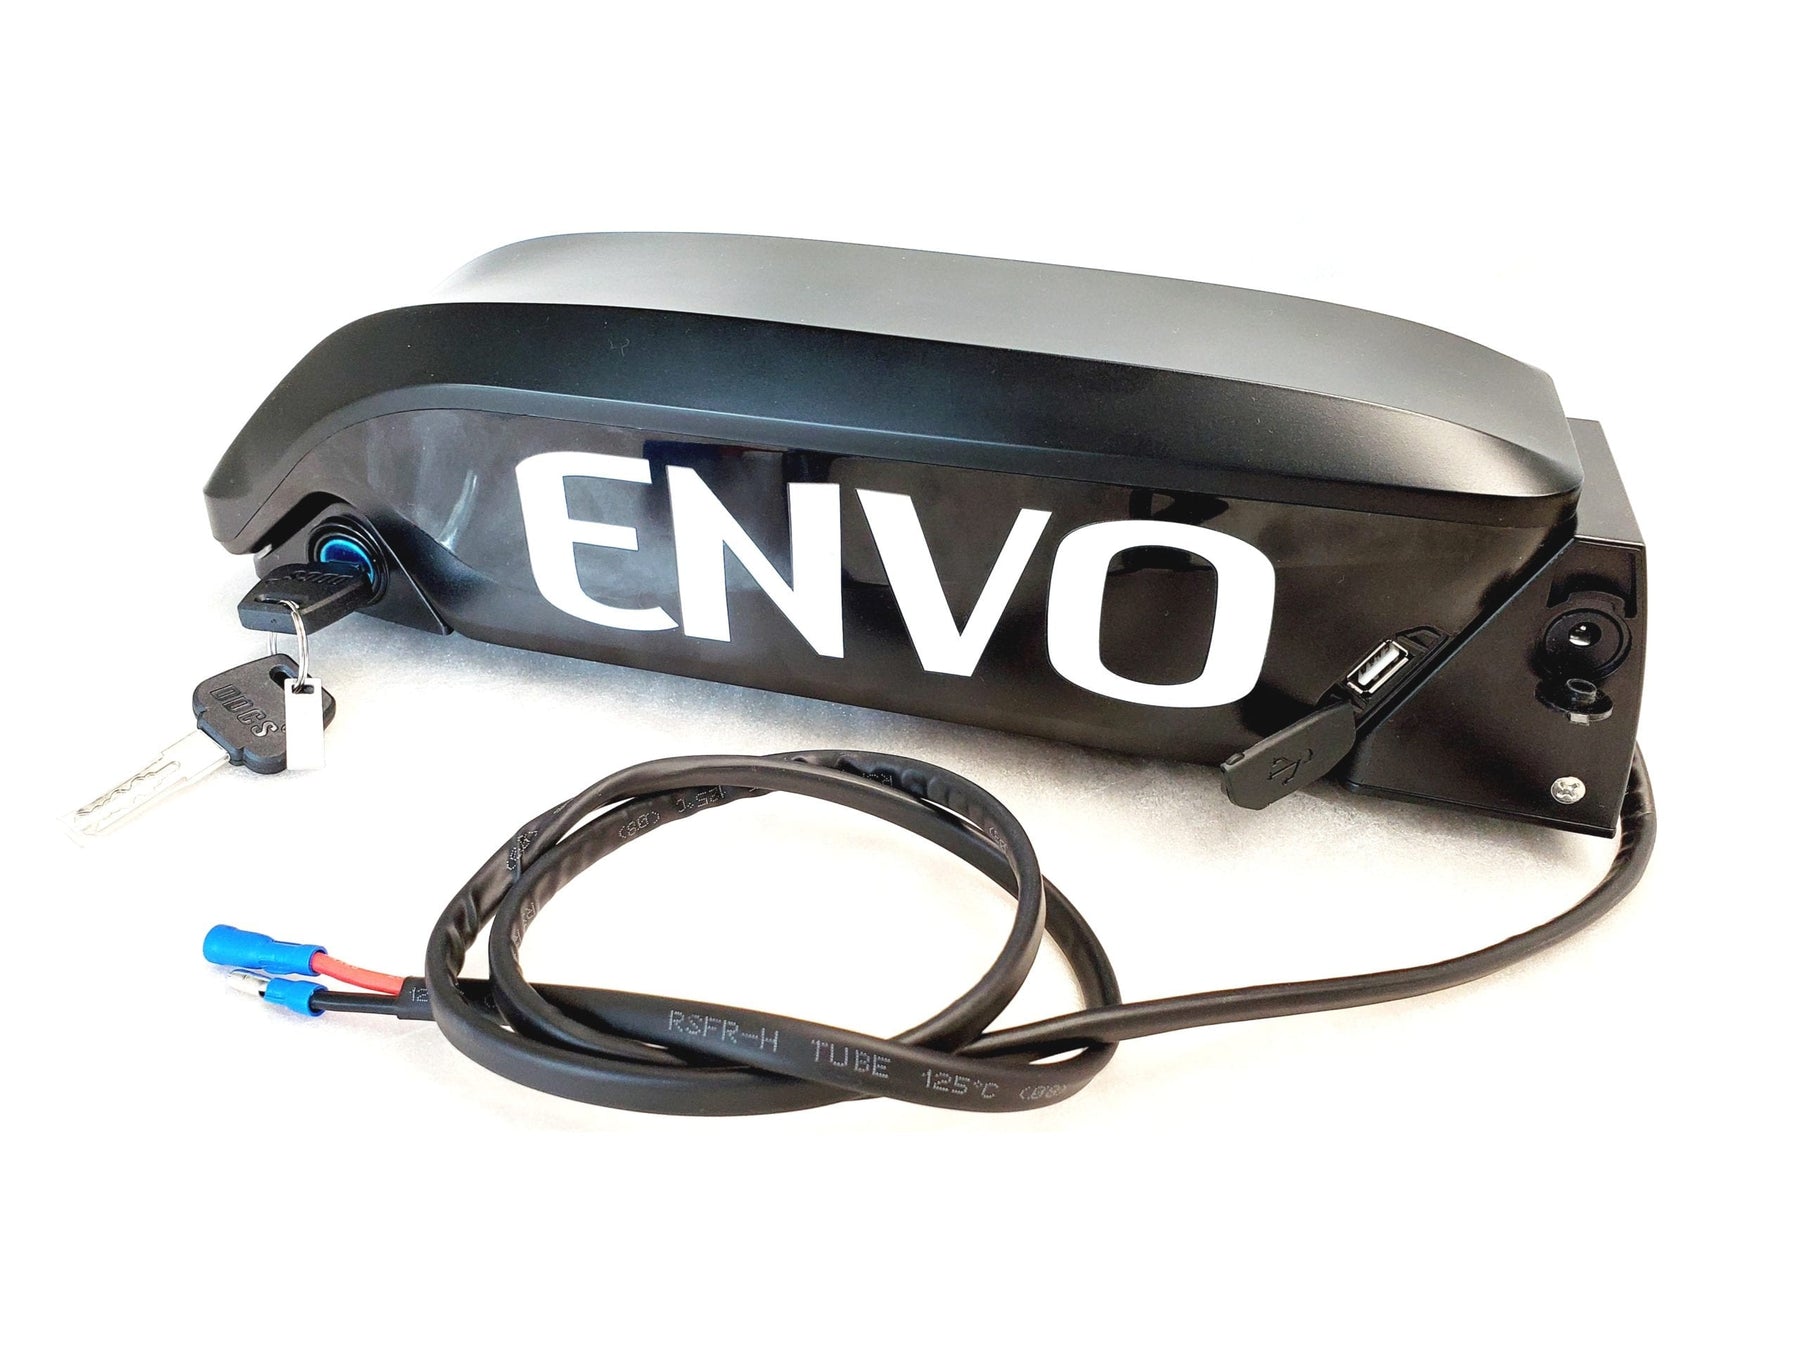 Support pour support de batterie pour batterie ENVO